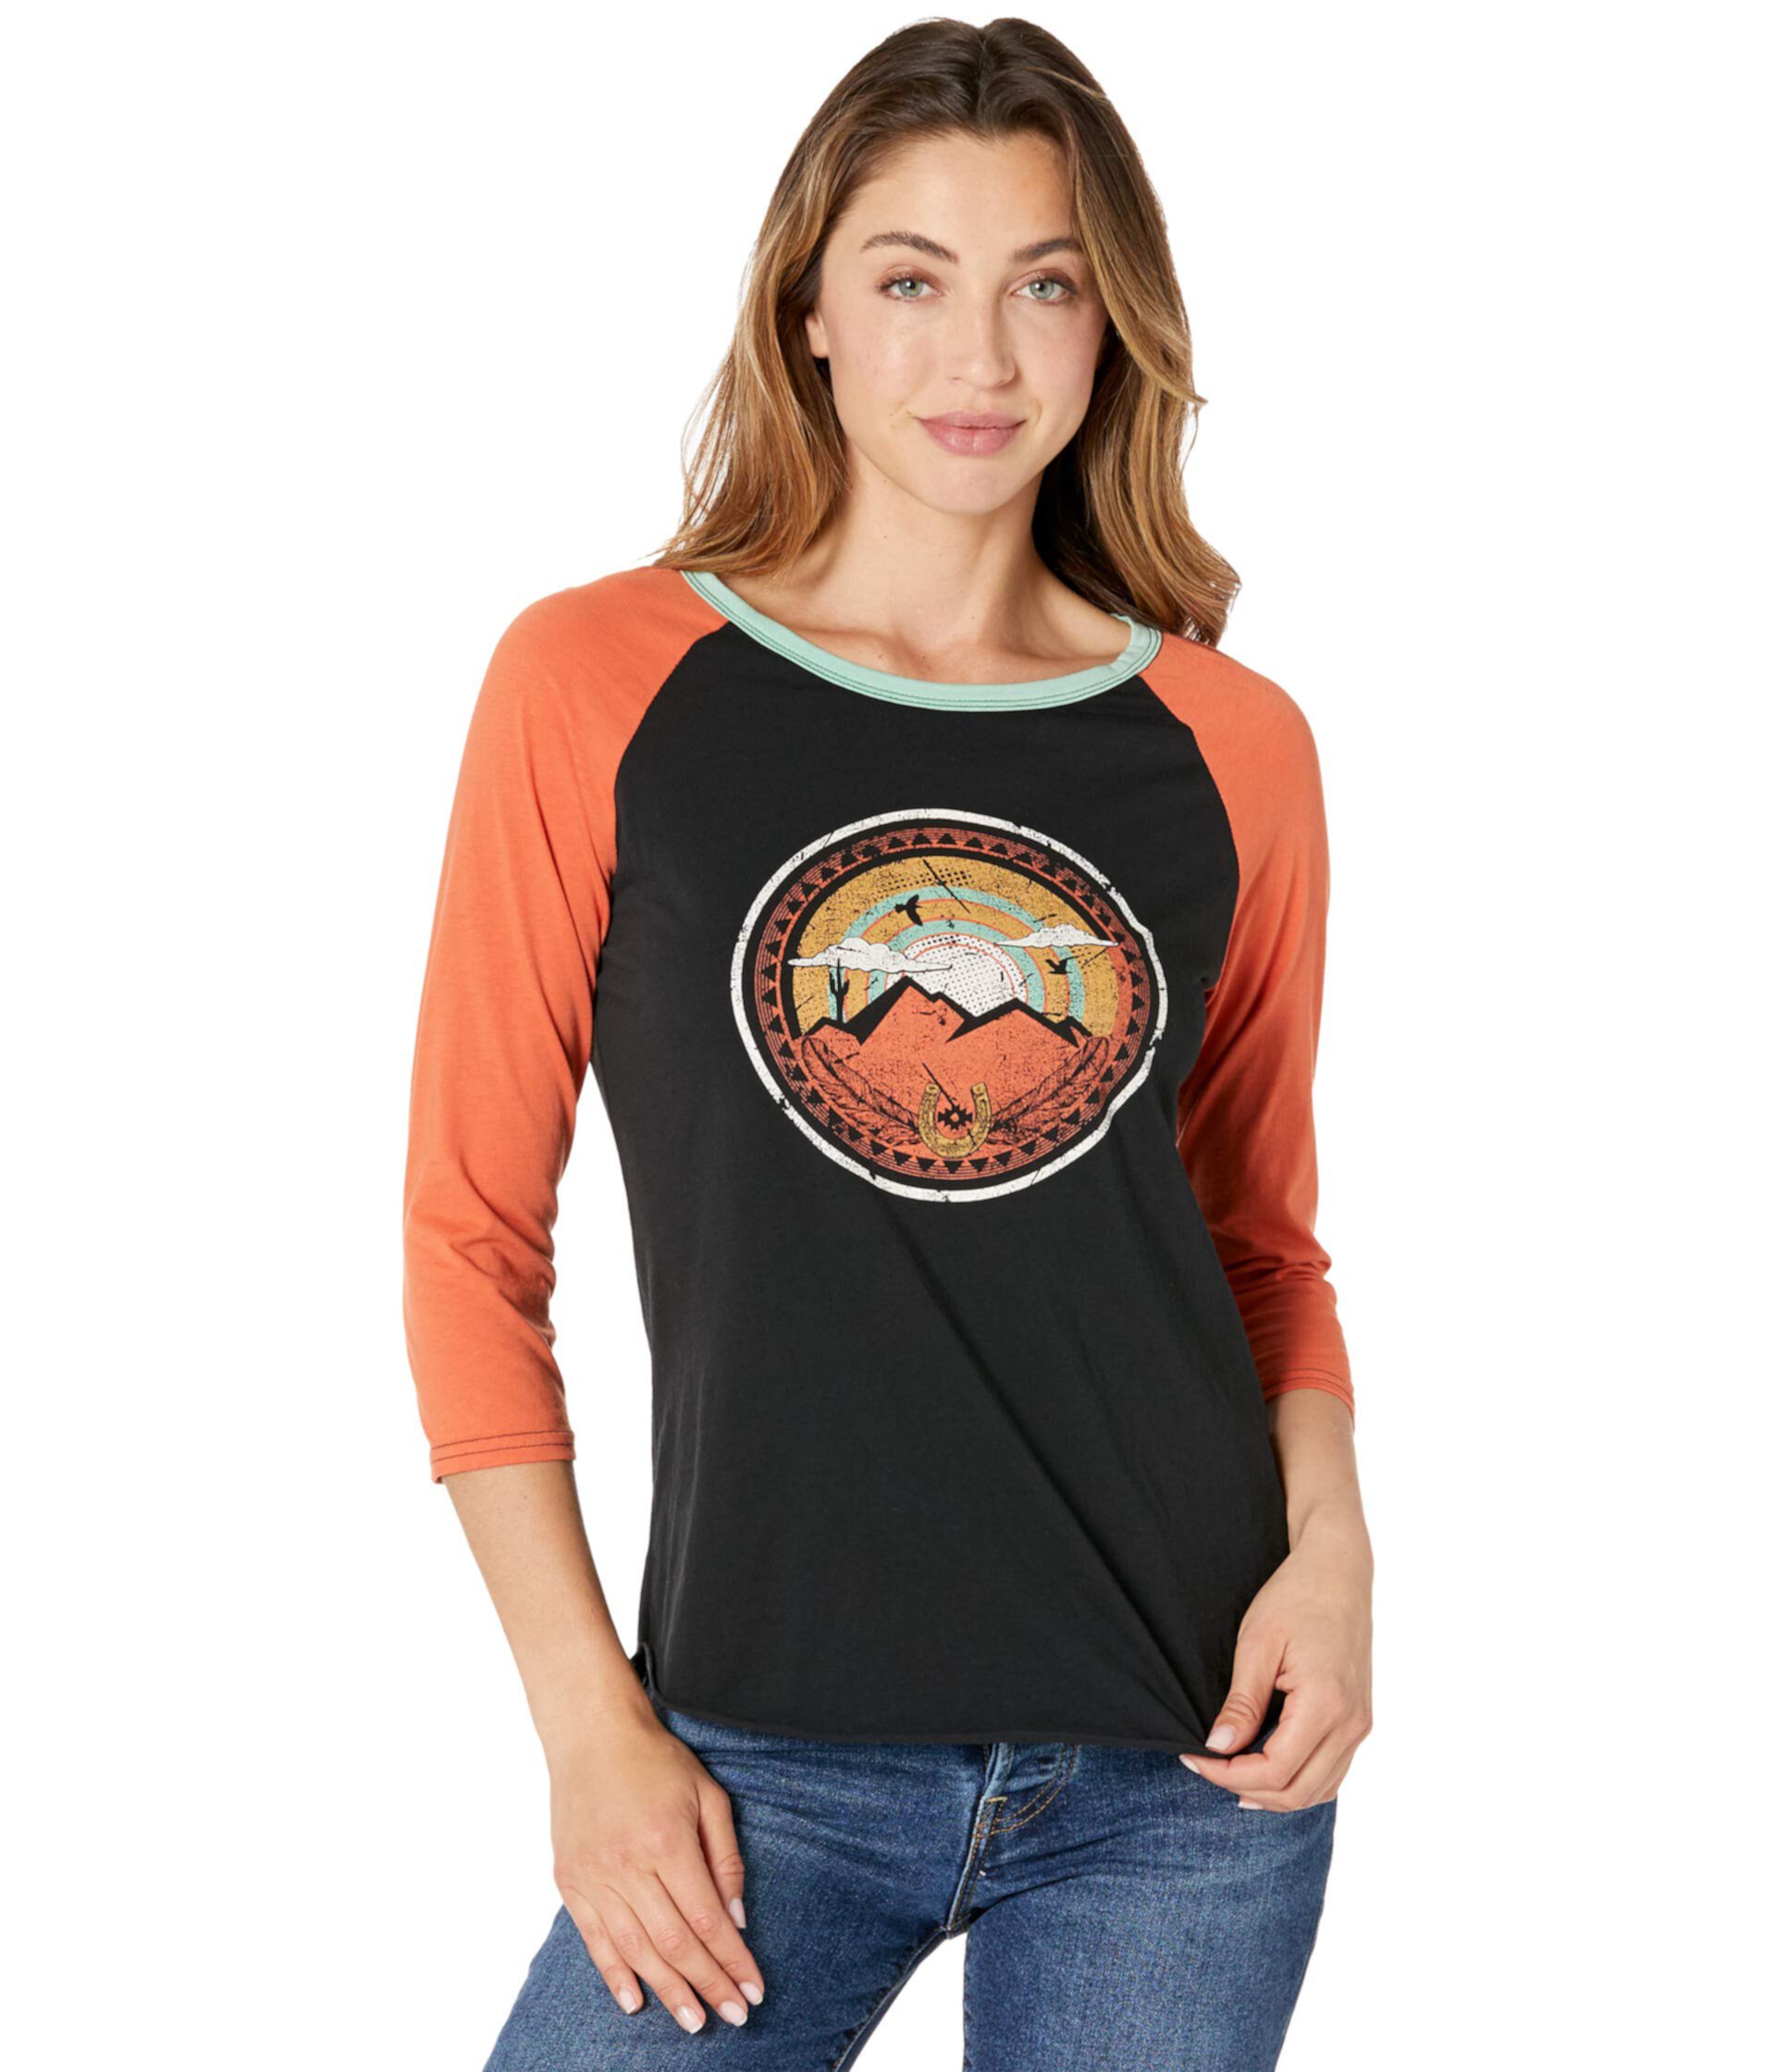 Рубашка с бейсбольным рукавом с рисунком 48T8414 Rock and Roll Cowgirl